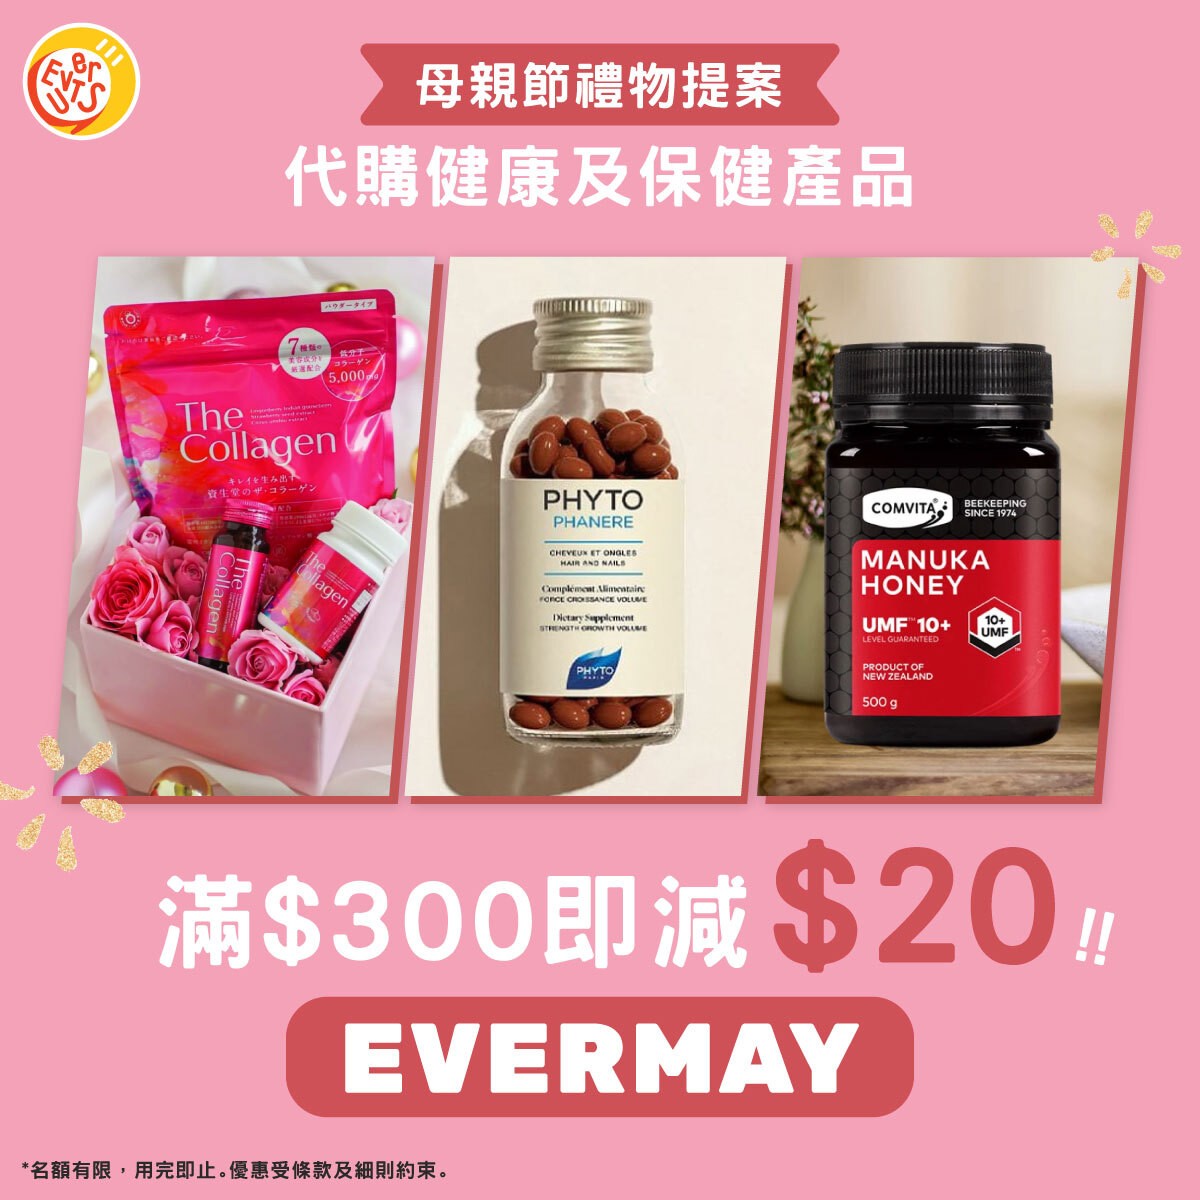 健康及保健產品限時HK$20優惠碼